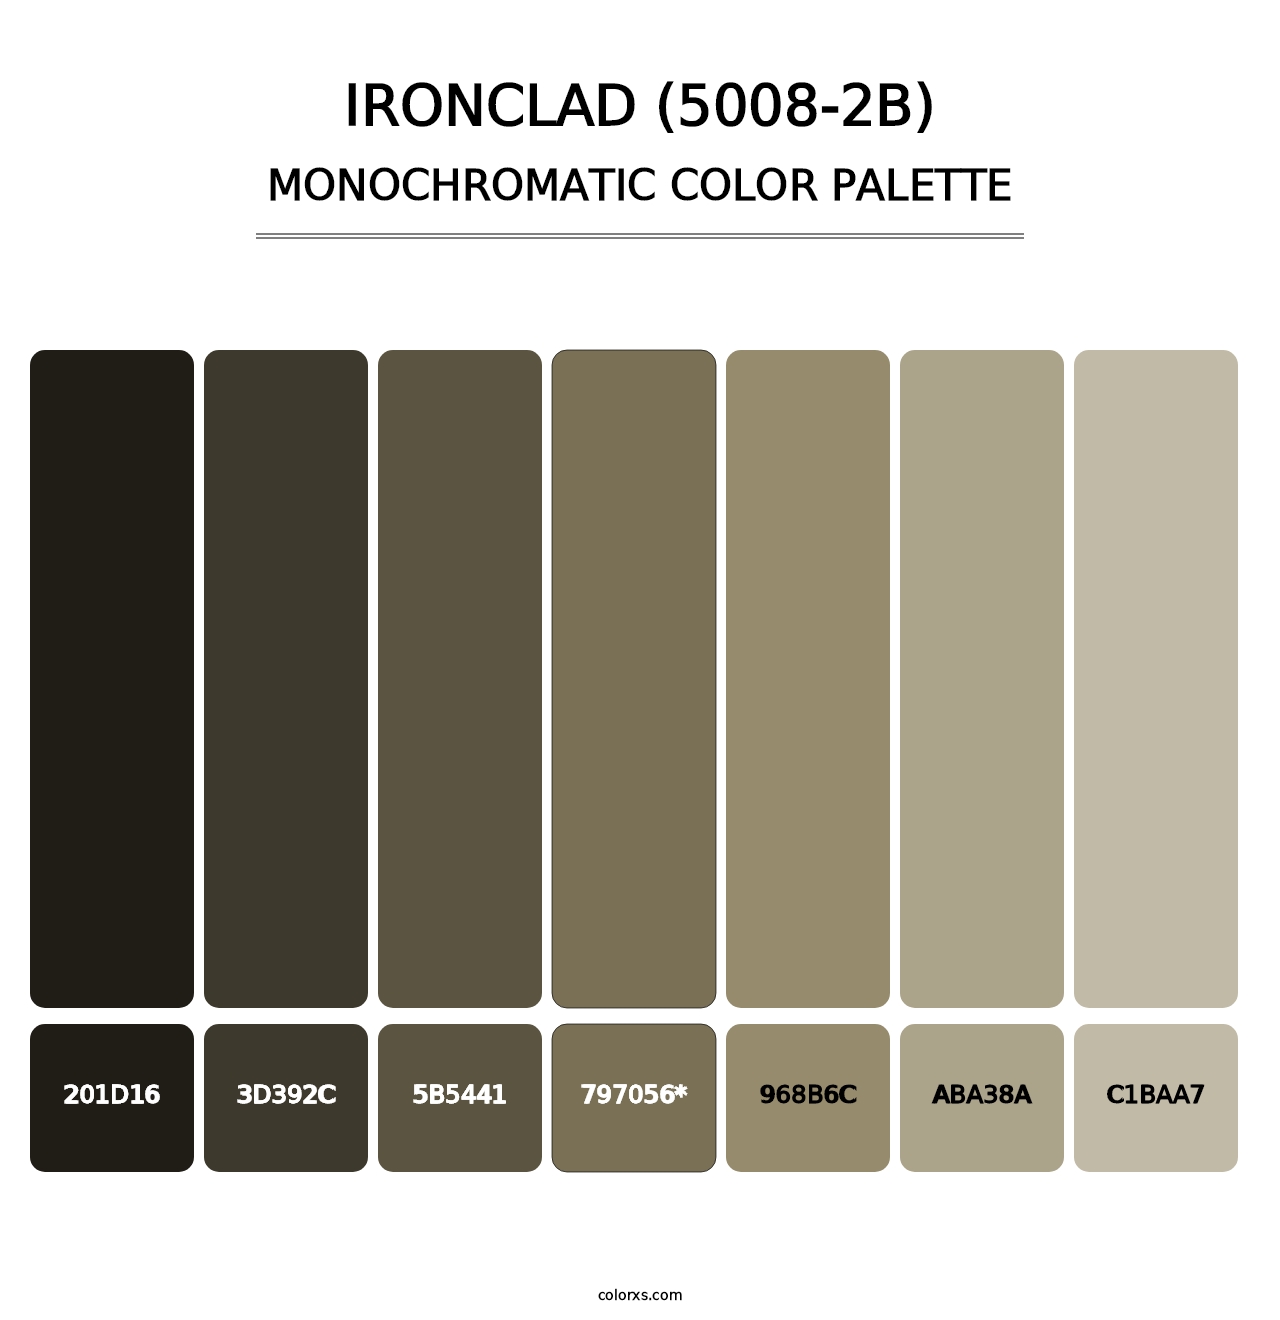 Ironclad (5008-2B) - Monochromatic Color Palette